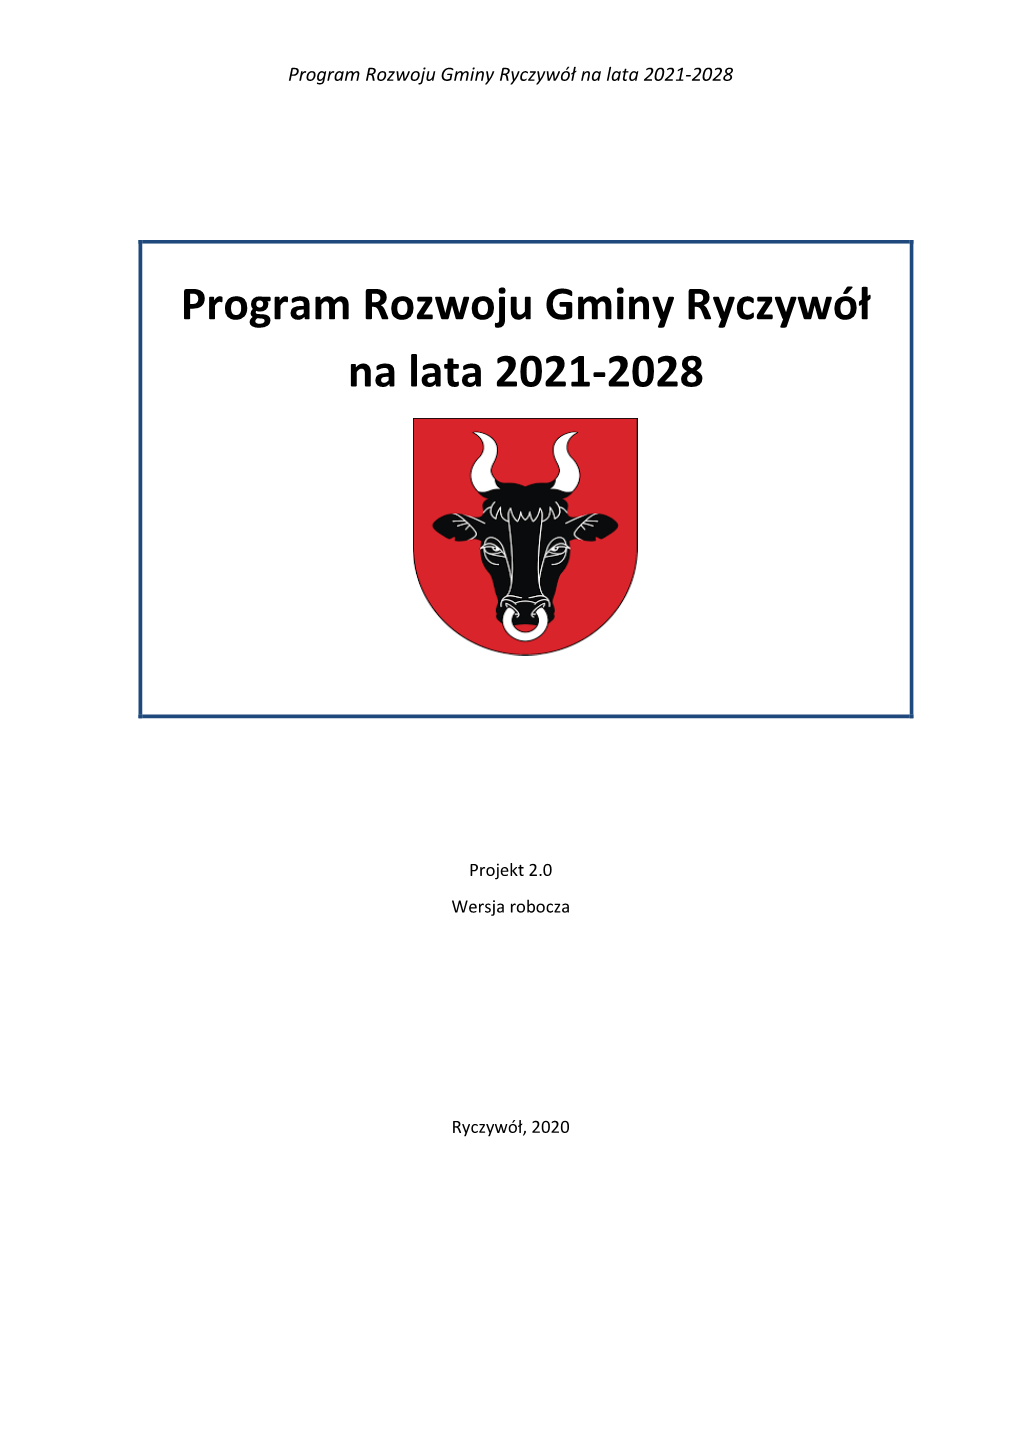 Program Rozwoju Gminy Ryczywół Na Lata 2021-2028